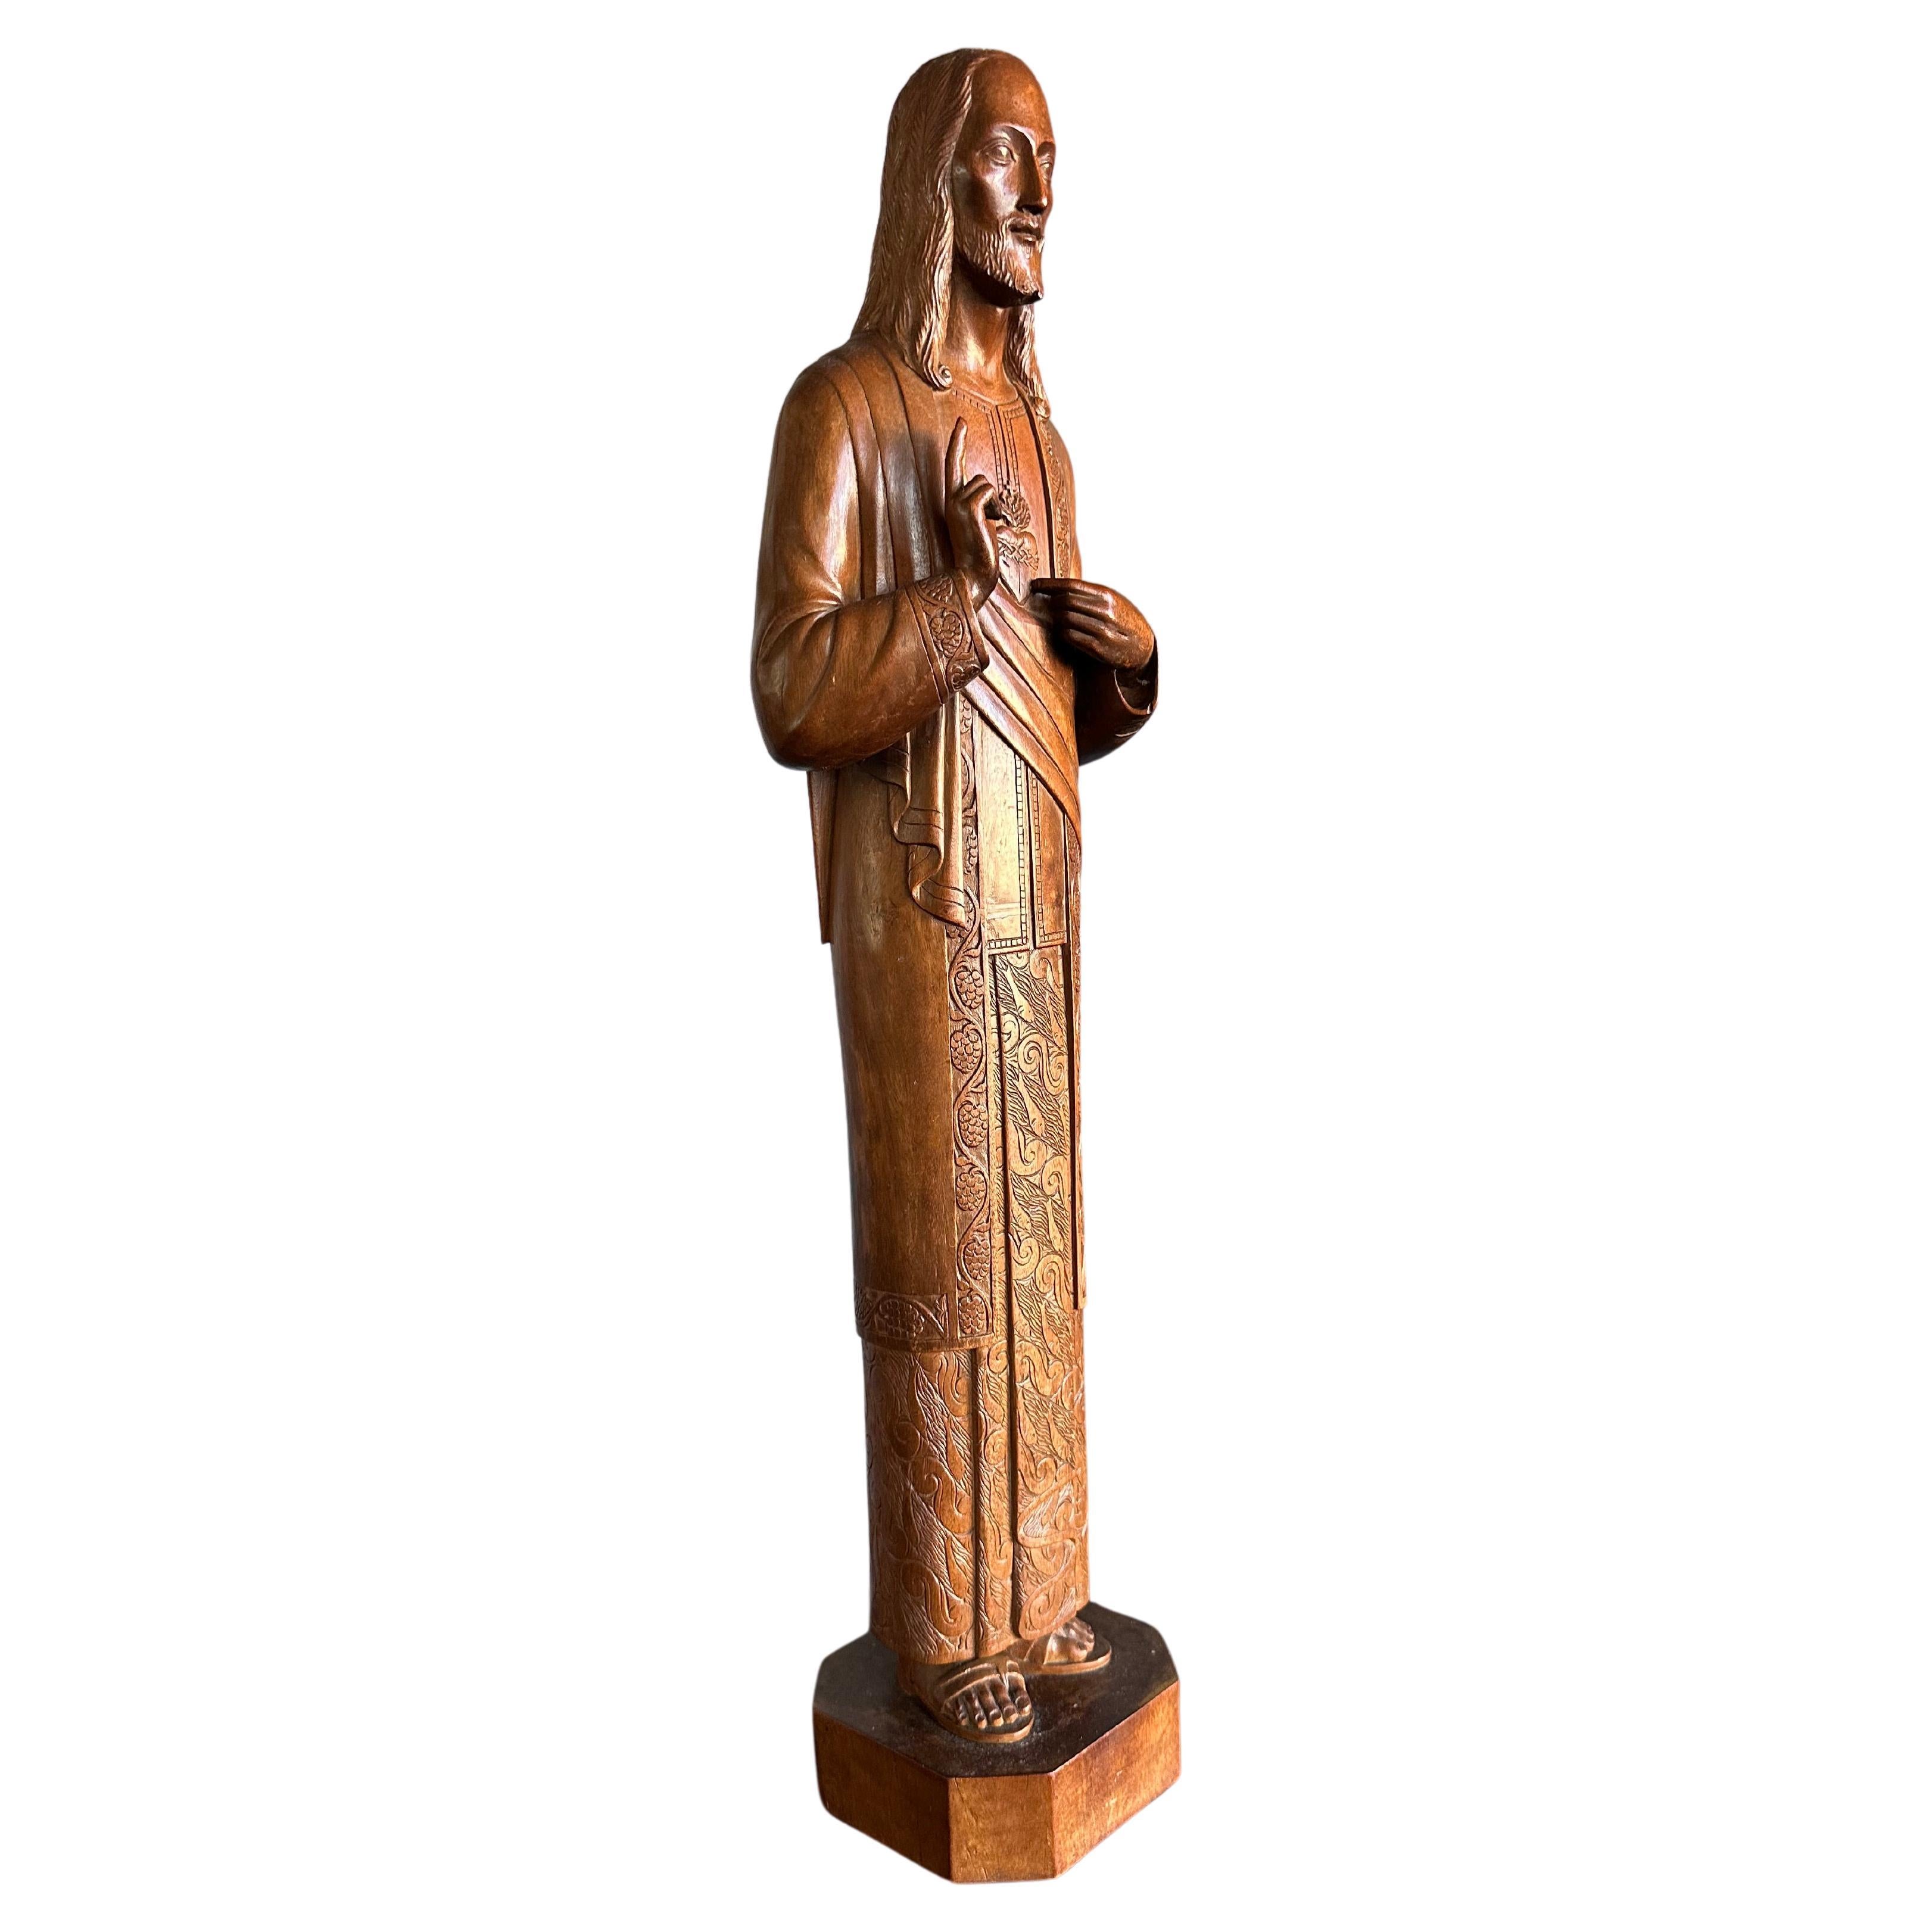 Antike und einzigartige, handgeschnitzte Holzskulptur / Statue des heiligen Herzens Christi aus Holz